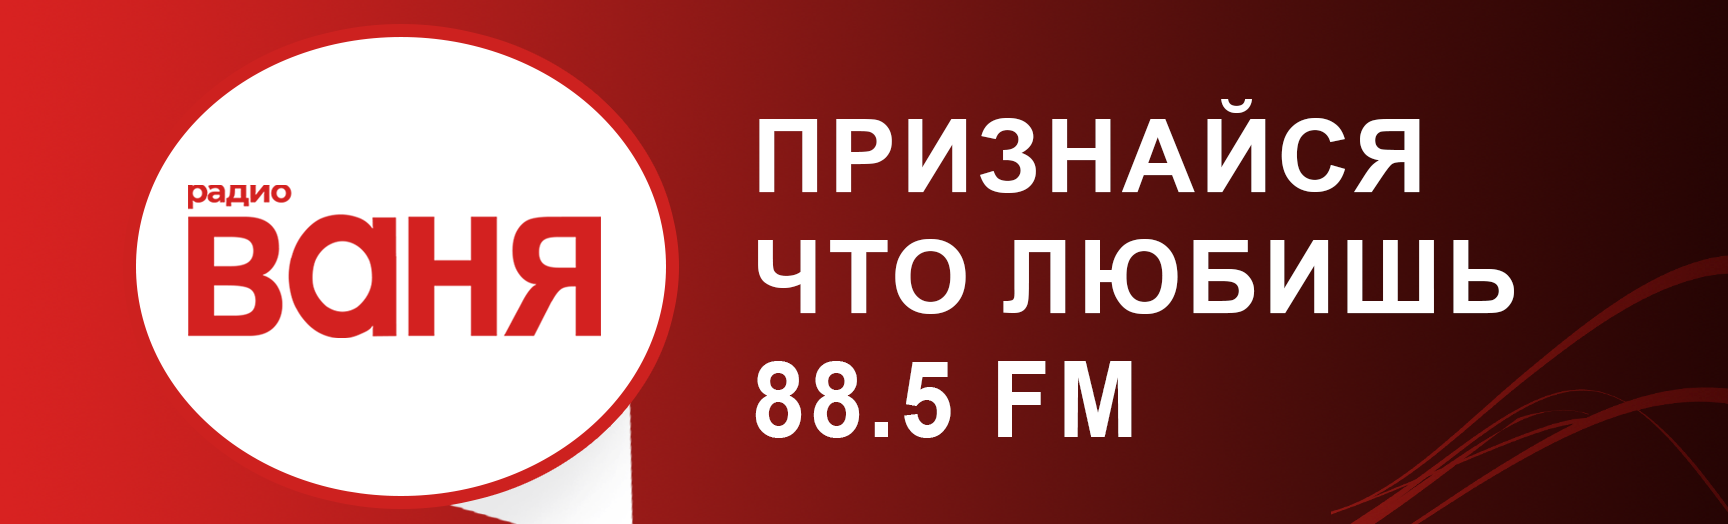 Радио Ваня. Радио Ваня частота в Москве. Радио Ваня Орел частота. Радио Ваня Кировская область.